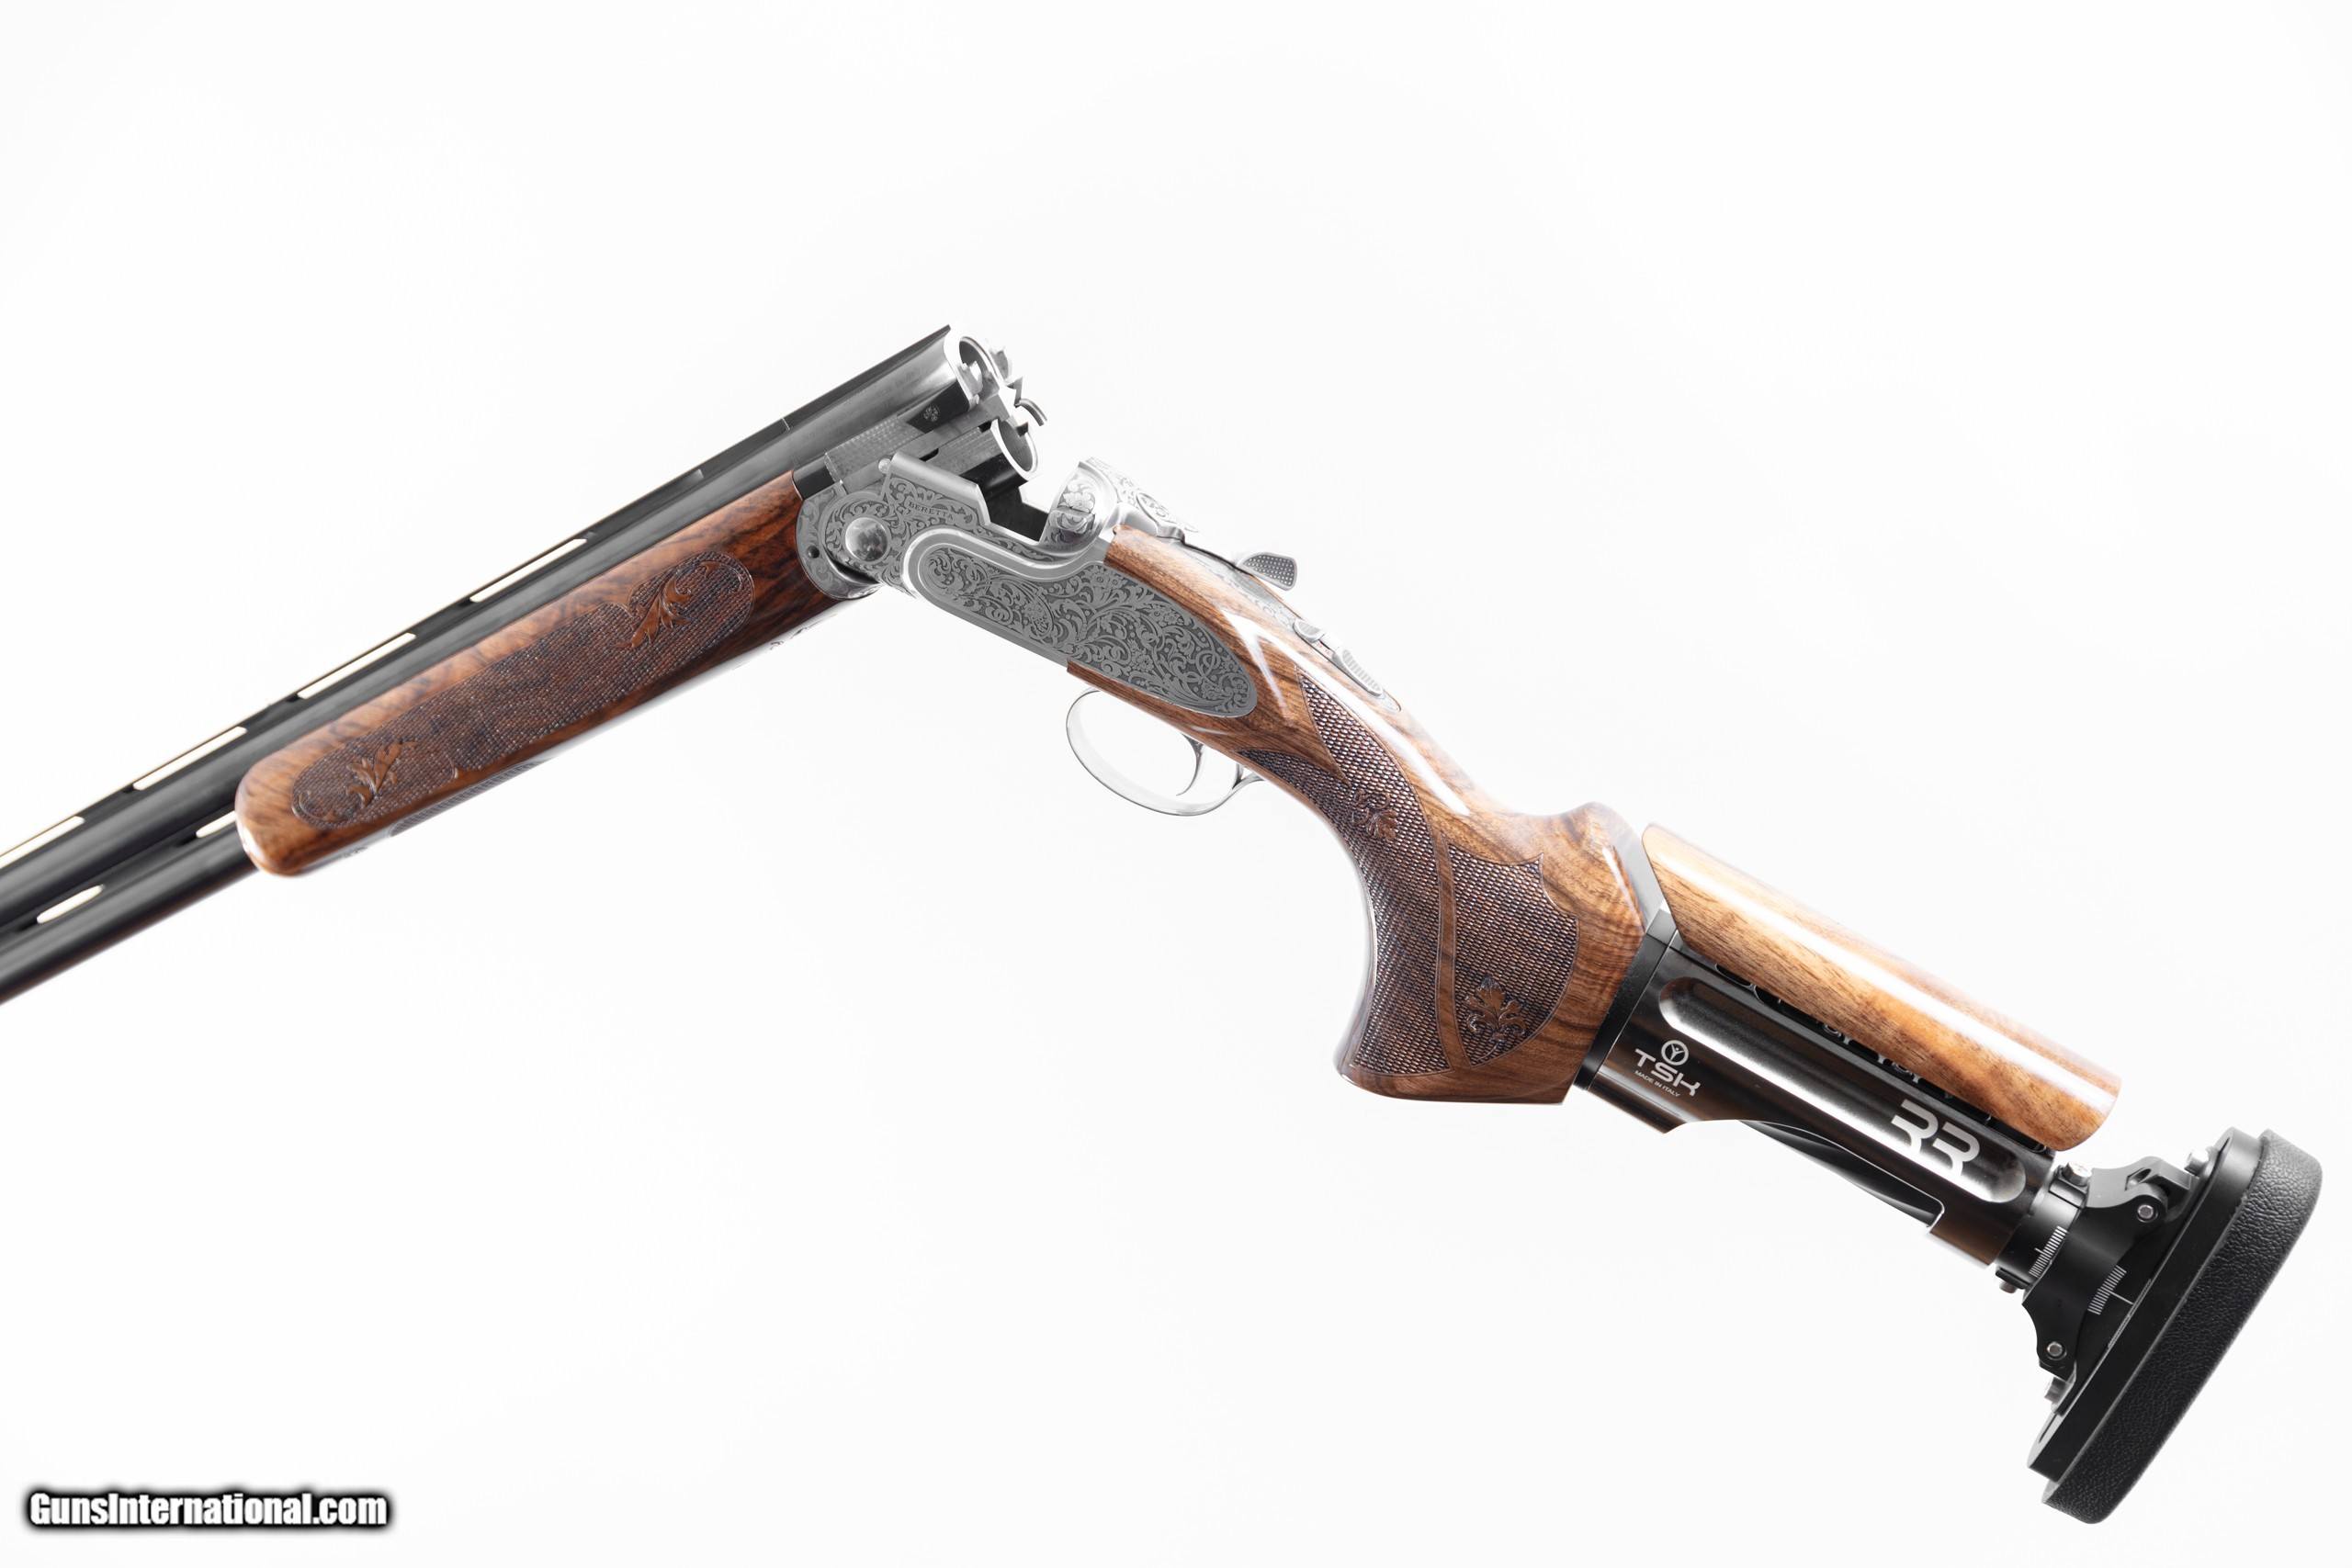 TSK - The Fully Adjustable Stock - Cole Fine Guns & Gunsmithing